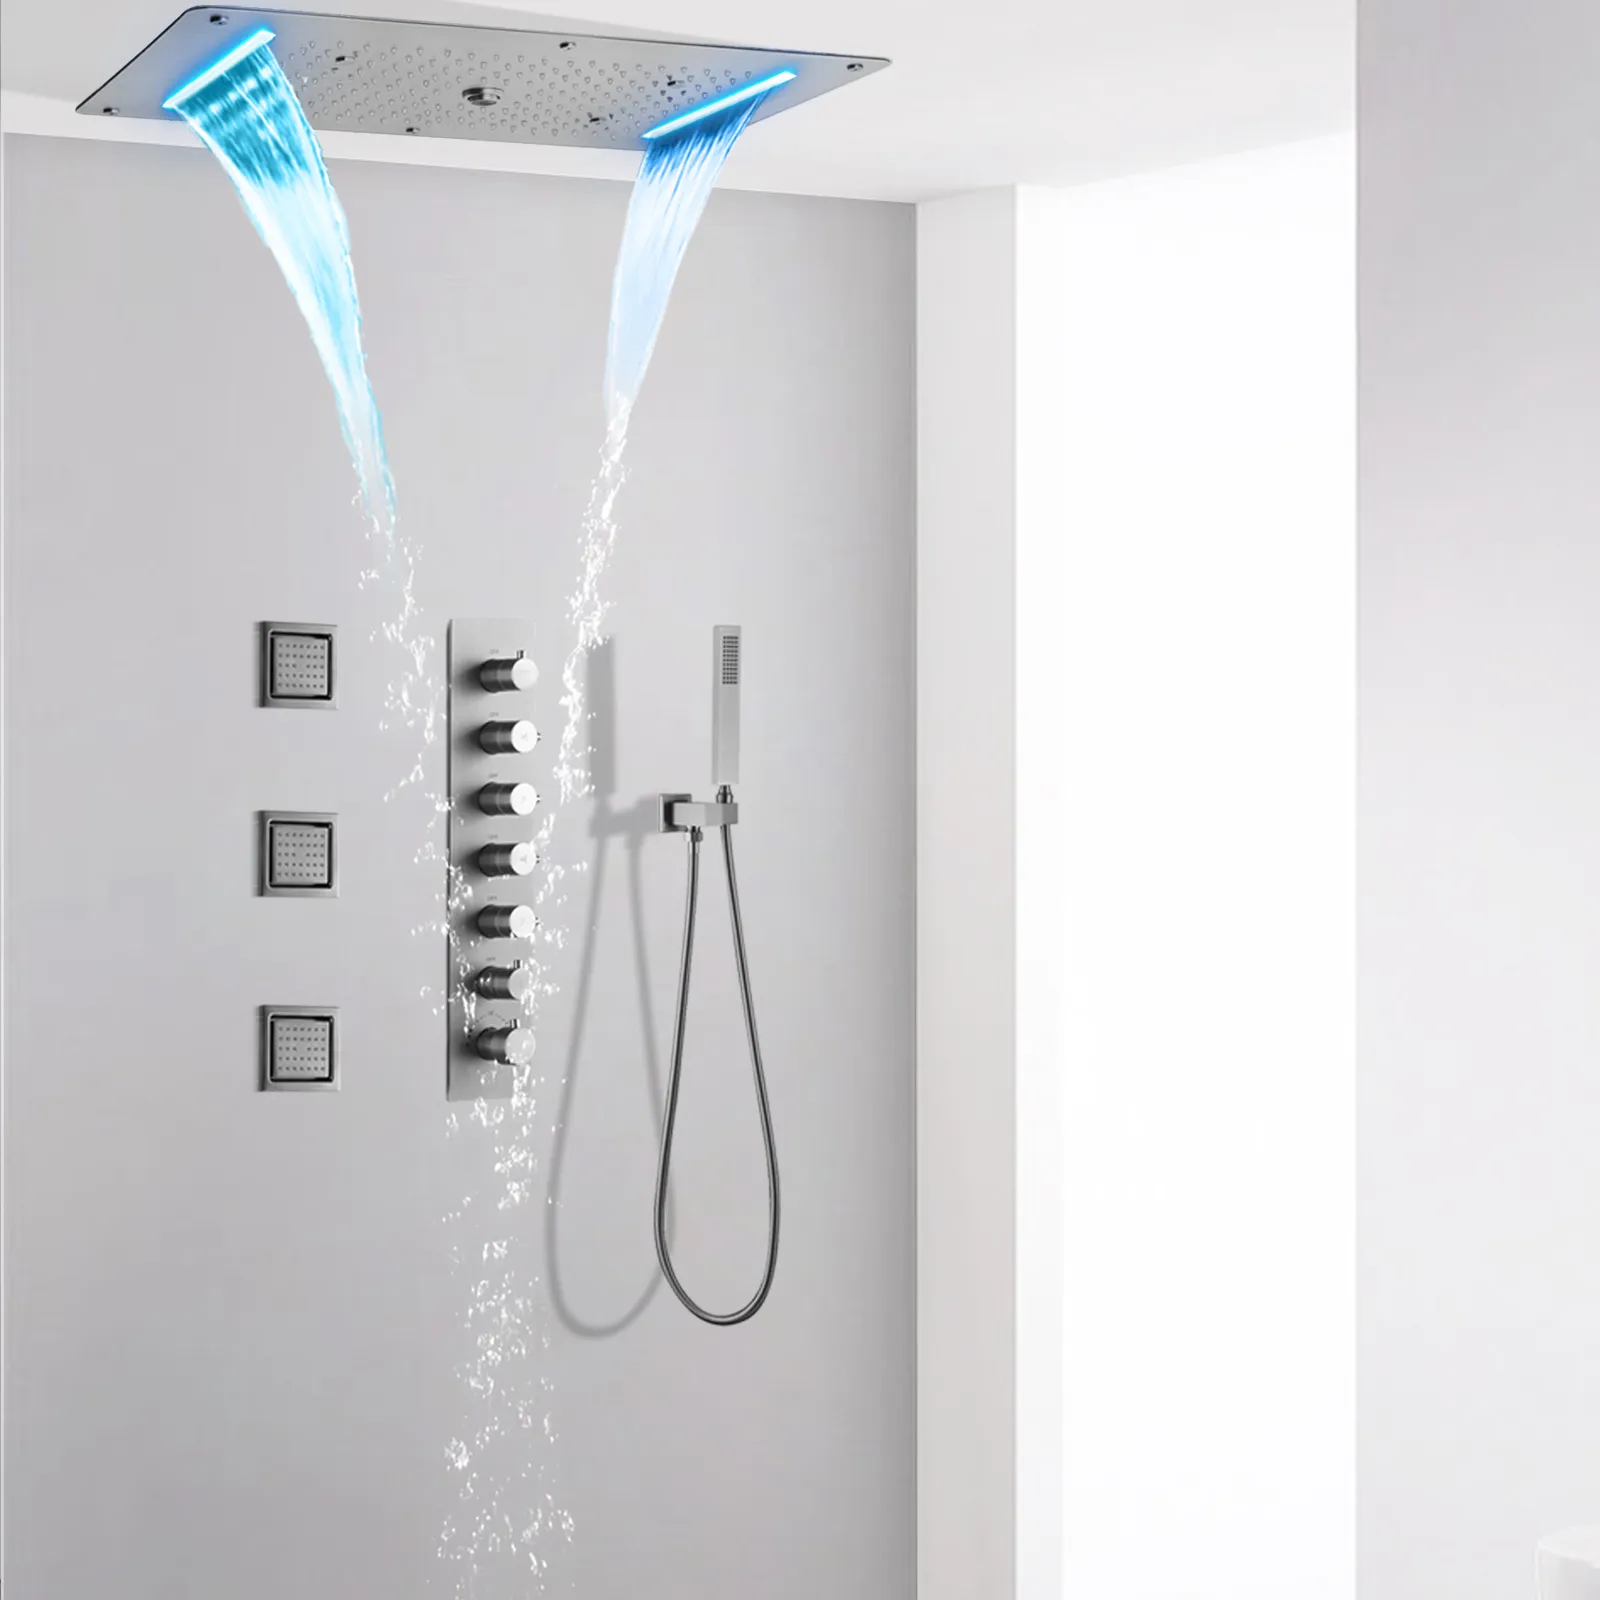 Sistema de chuveiro led teto embutido 700*380mm cachoeira led cabeça de chuveiro do banheiro termostática conjunto torneira do chuveiro